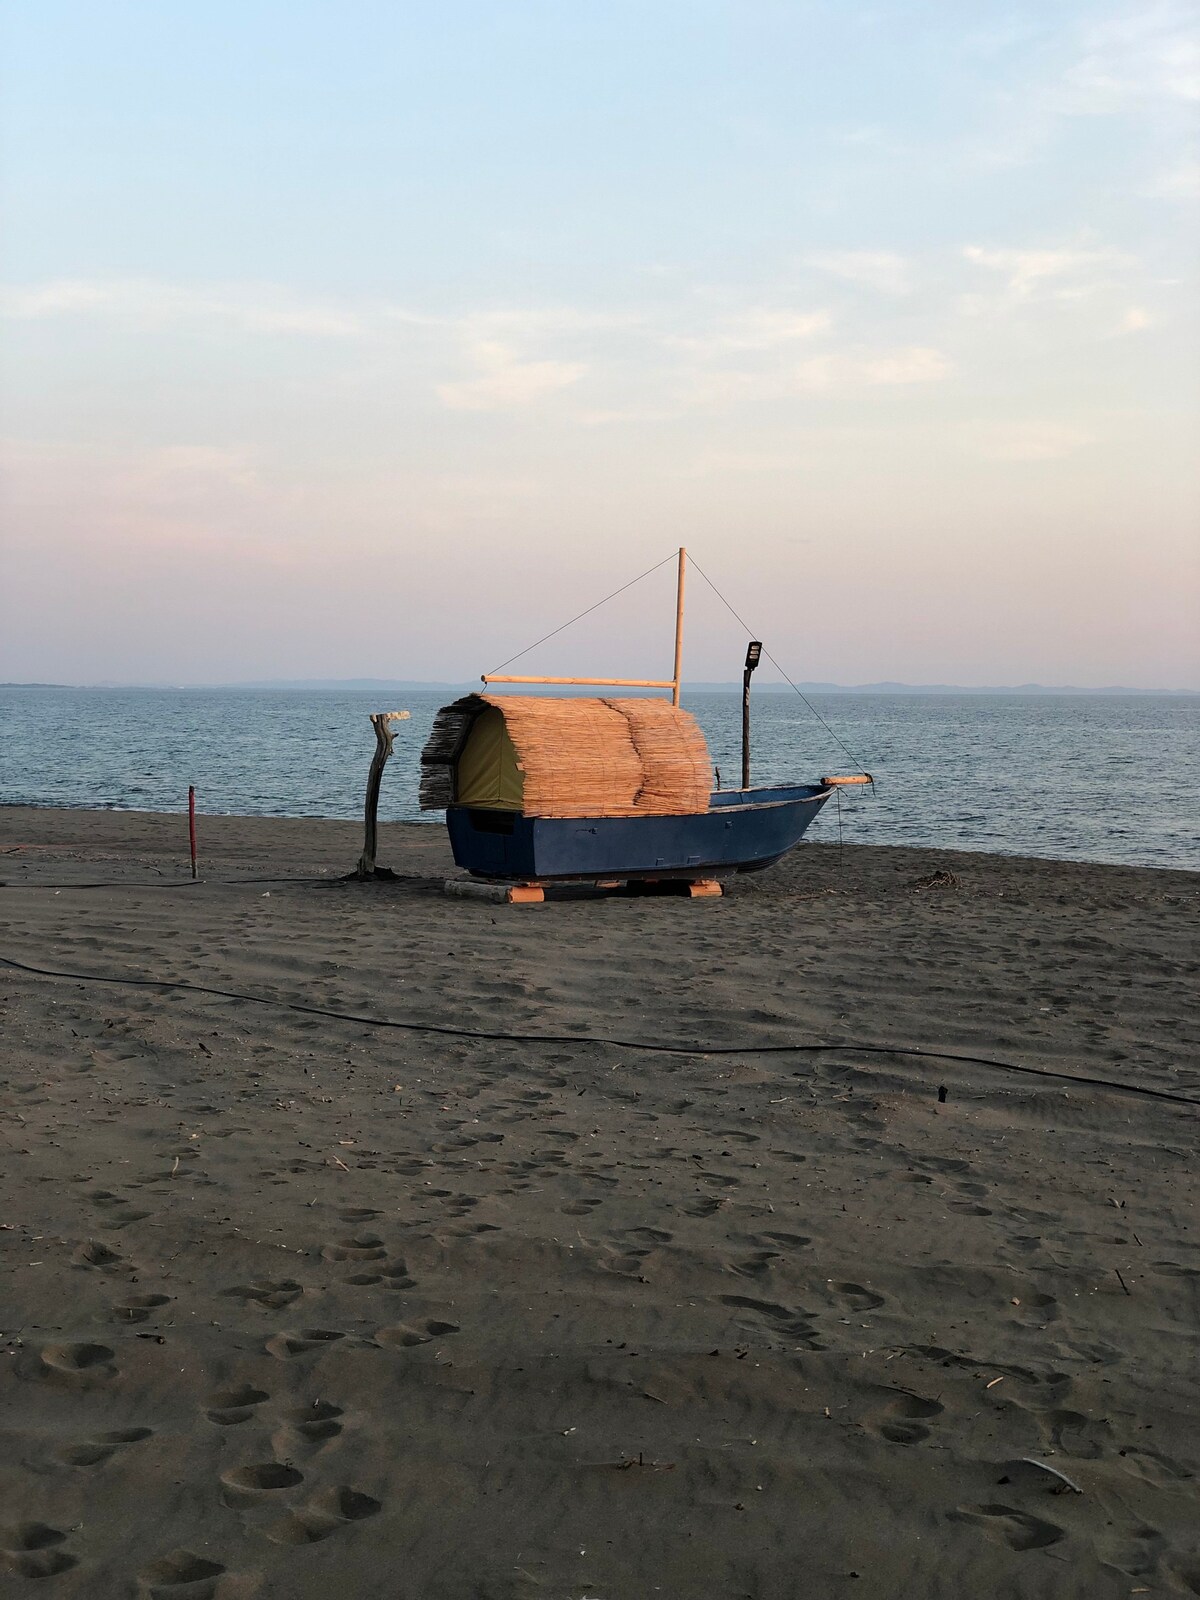 Adria-1 
Campingboat